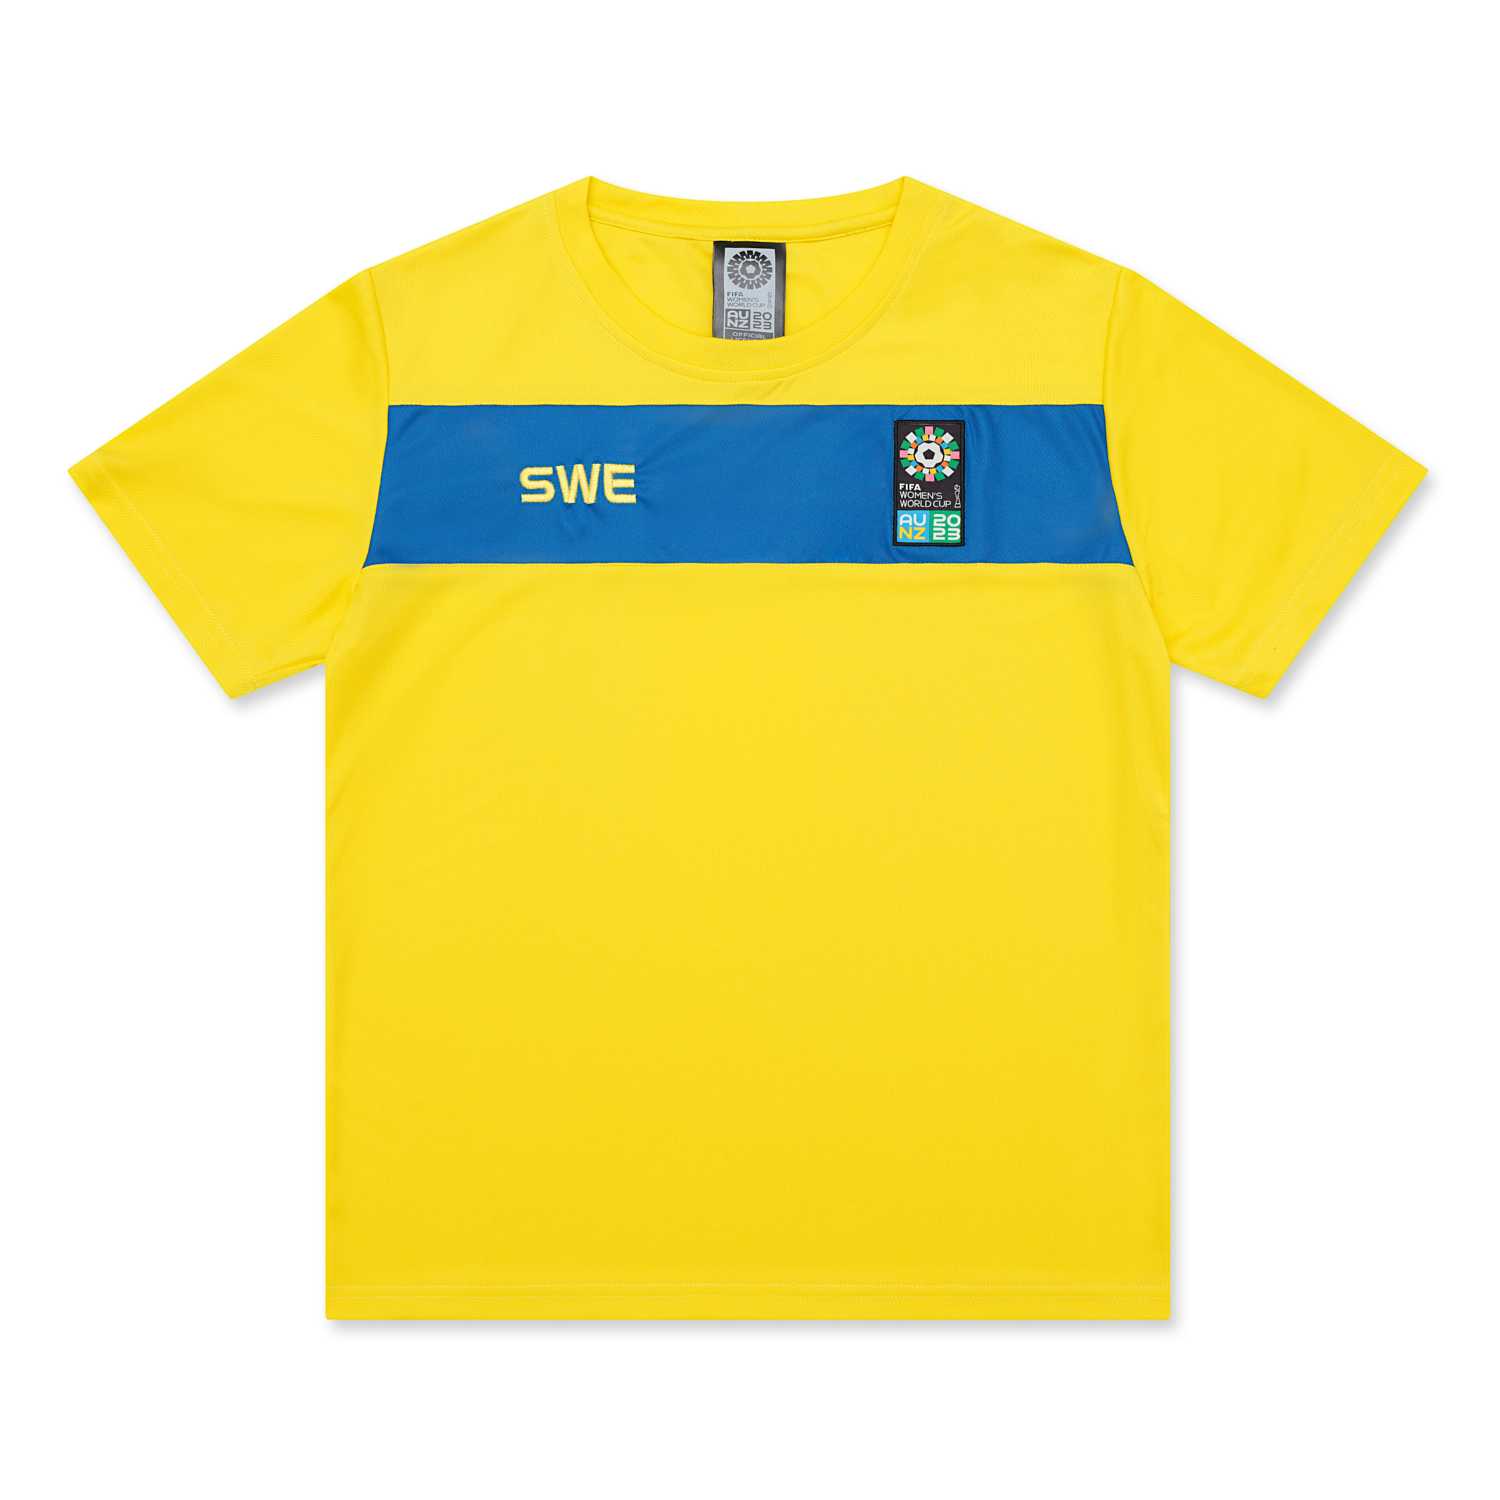 Sweden Women's World Cup 2023 Yellow T-Shirt - Unisex